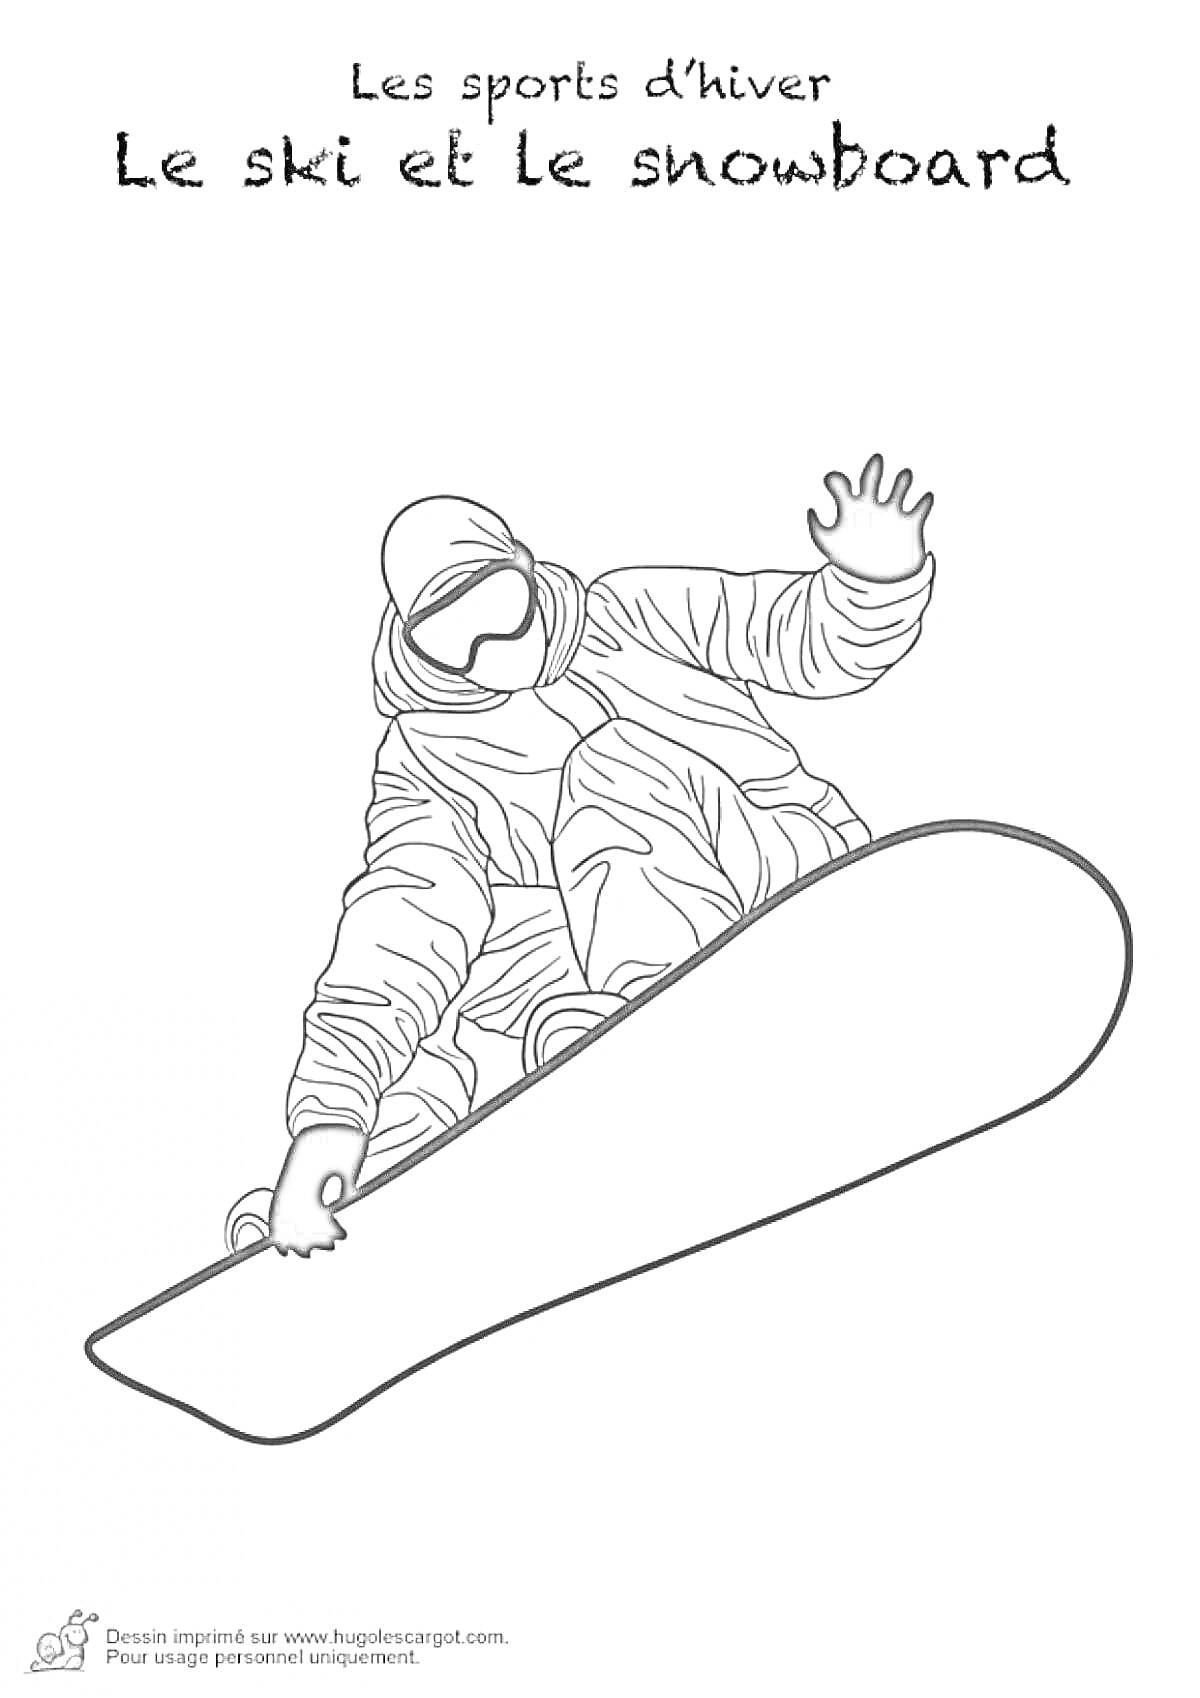 На раскраске изображено: Сноубордист, Зимние виды спорта, Снег, Спорт, Активность, Зимний спорт, Сноуборд, Фигурка человека, Зимняя одежда